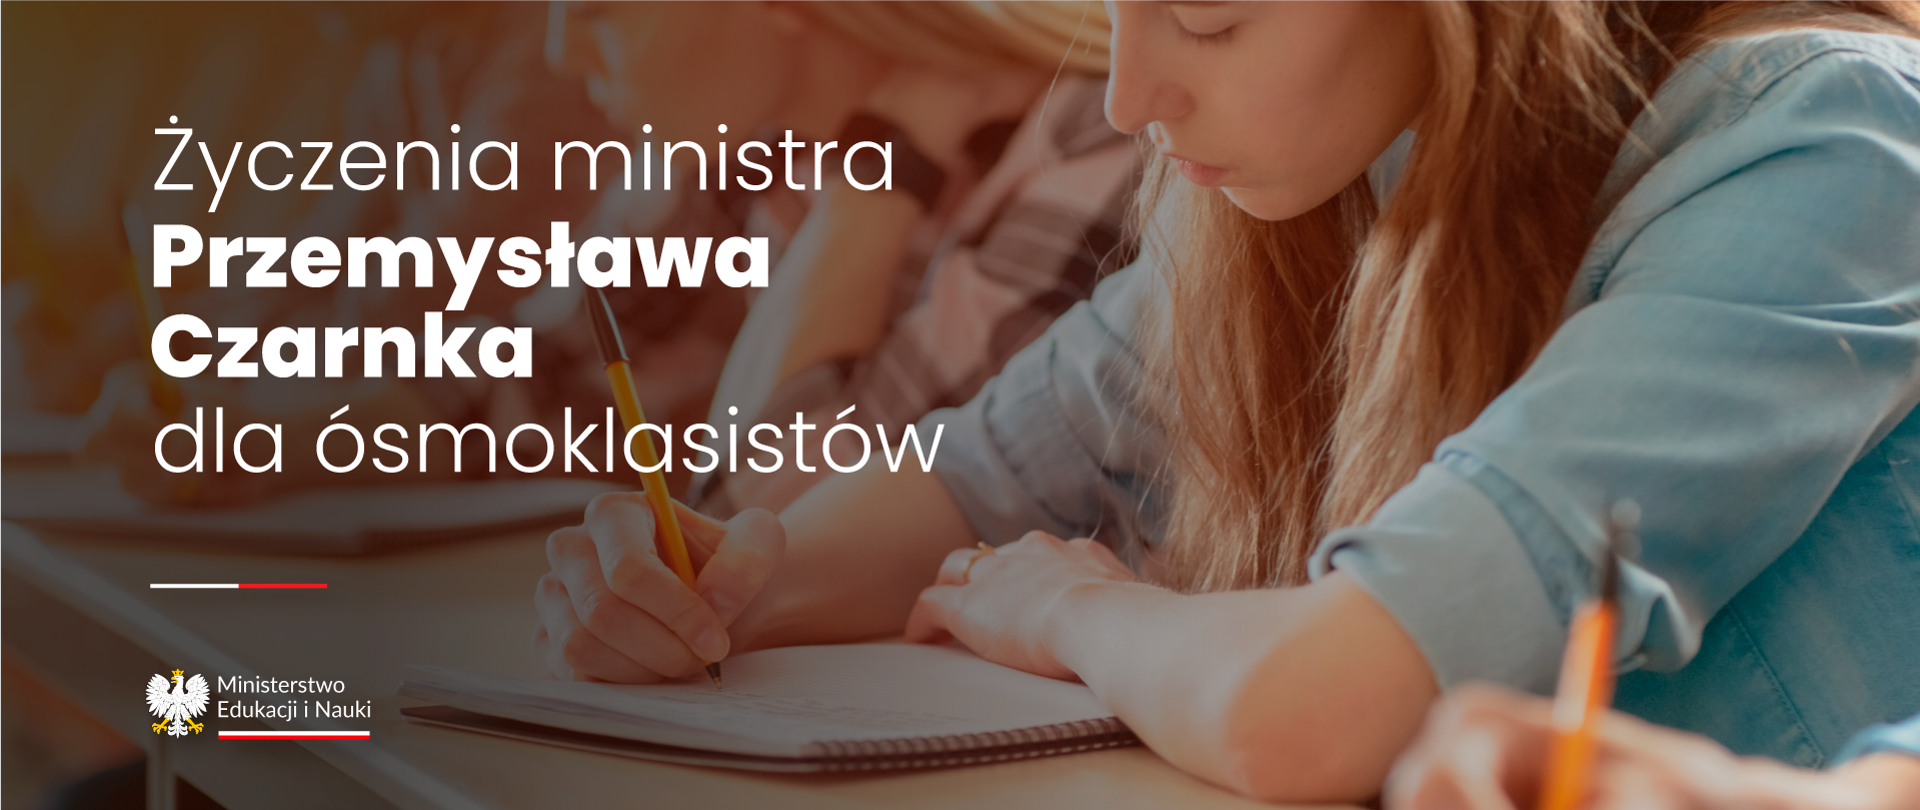 Napis Życzenia ministra Przemysława Czarnka dla ósmoklasistów w tle dziewczyna z długimi włosami ubrana w niebieską koszule dżinsową pisze coś w zeszycie. W ręku trzyma pomarańczowy długopis. 